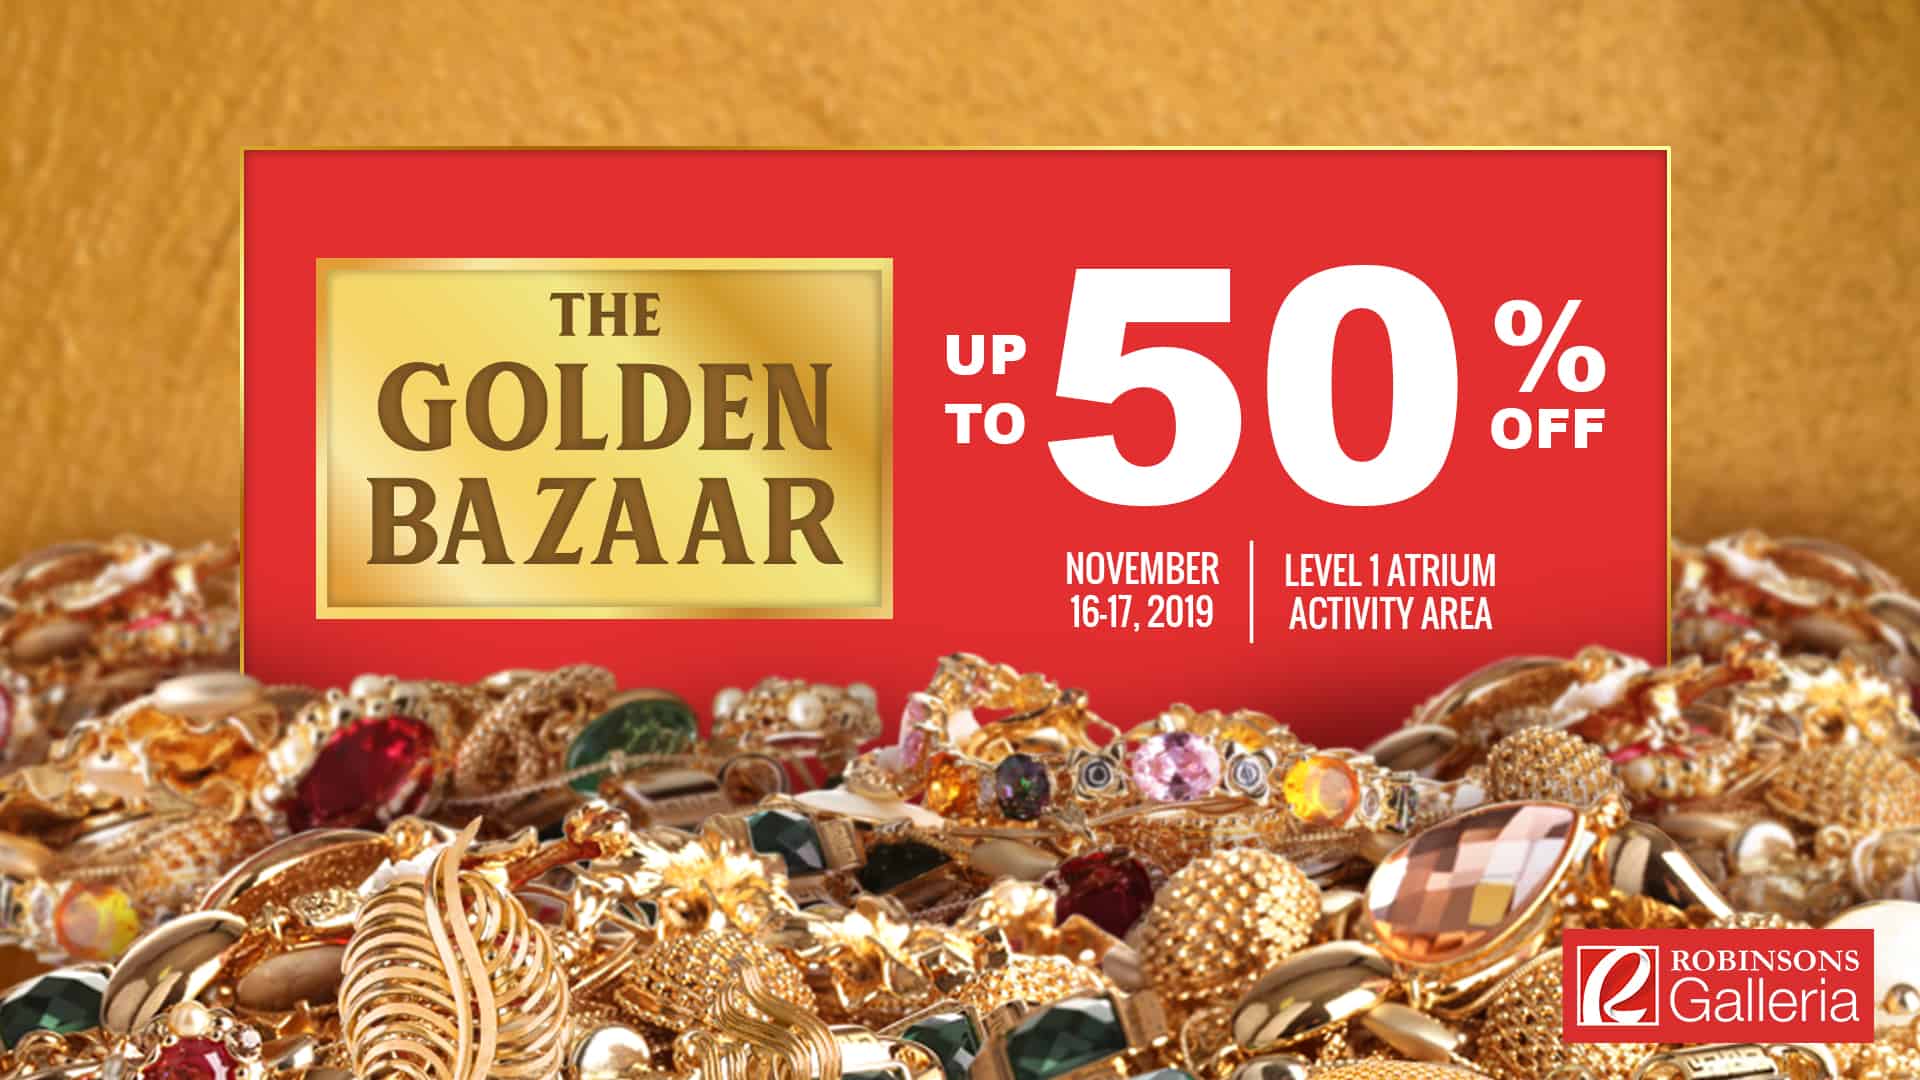 The Golden Bazaar